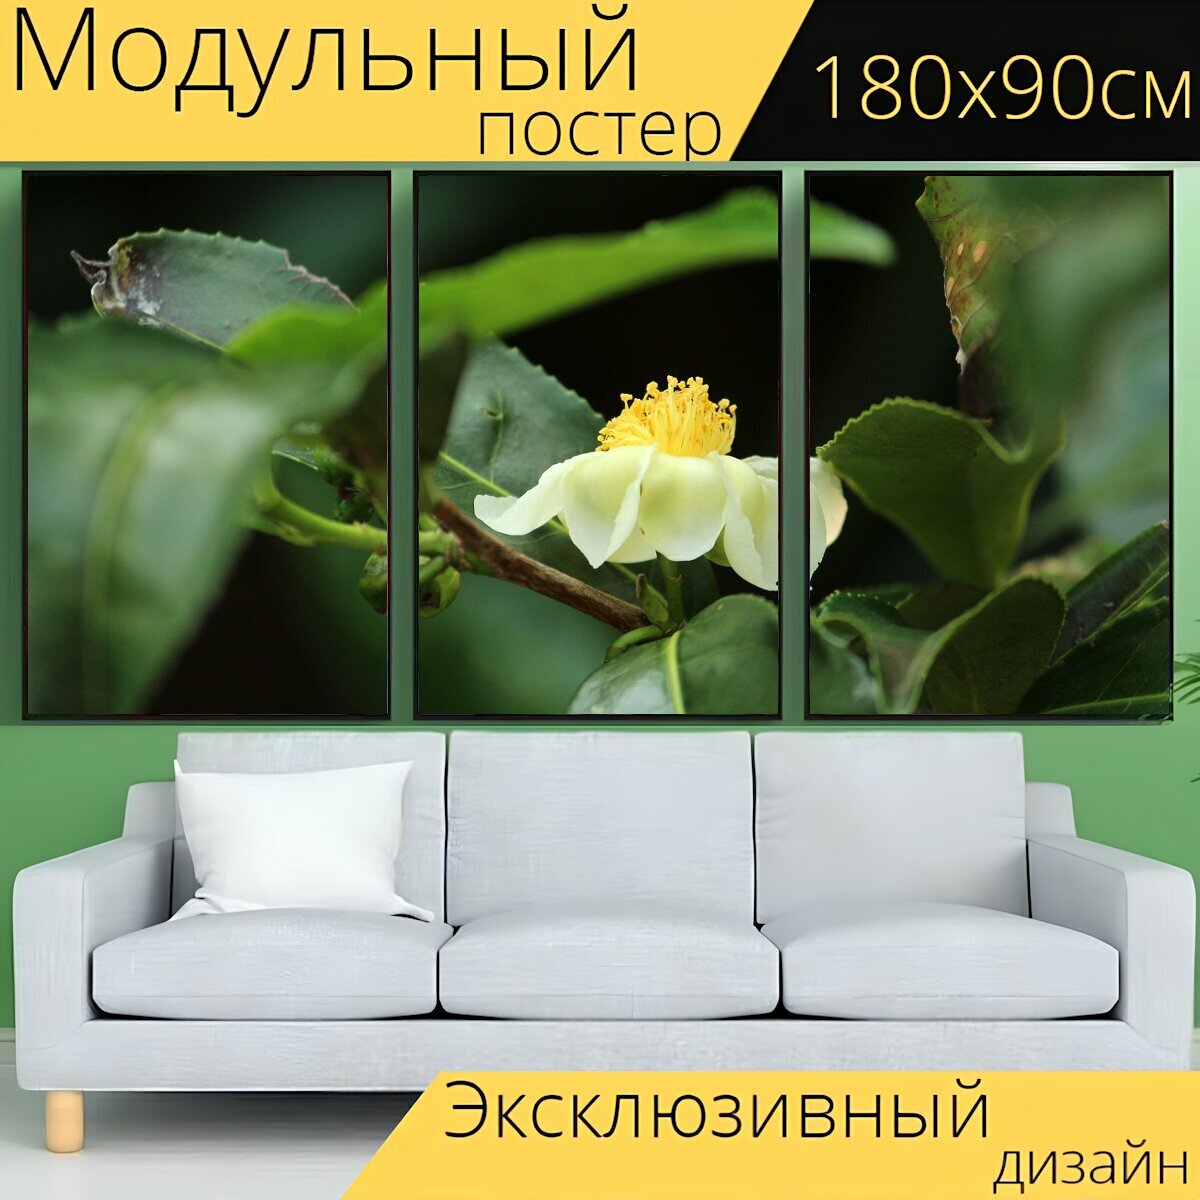 Модульный постер "Природа, лист, цветок" 180 x 90 см. для интерьера